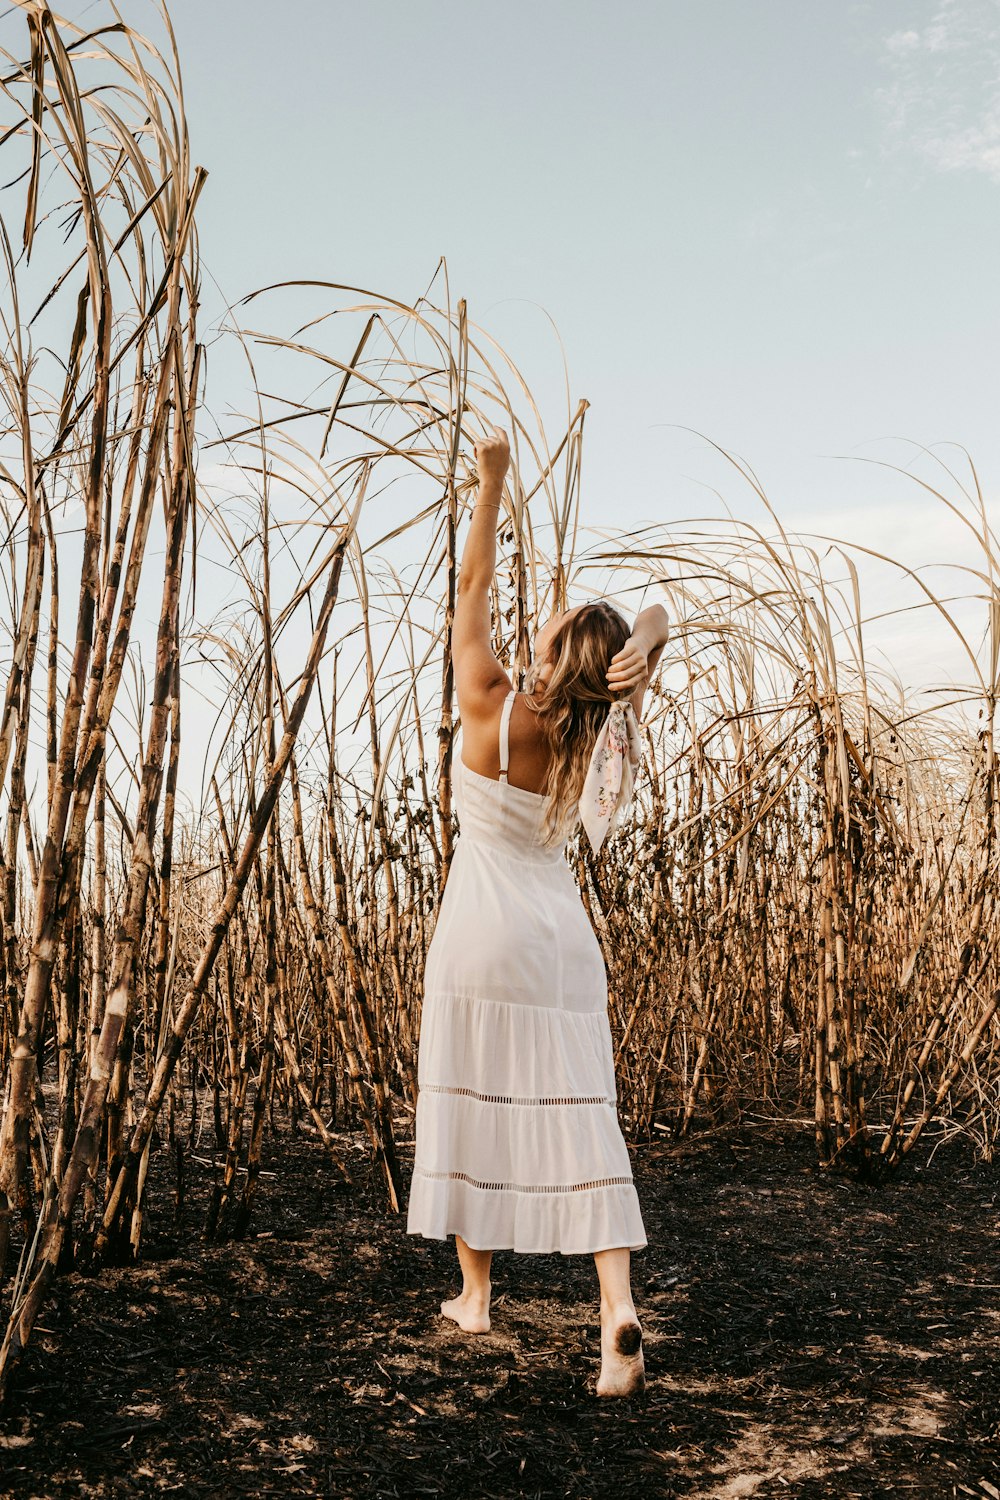 Mujer en vestido blanco de pie en el campo de hierba marrón durante el día